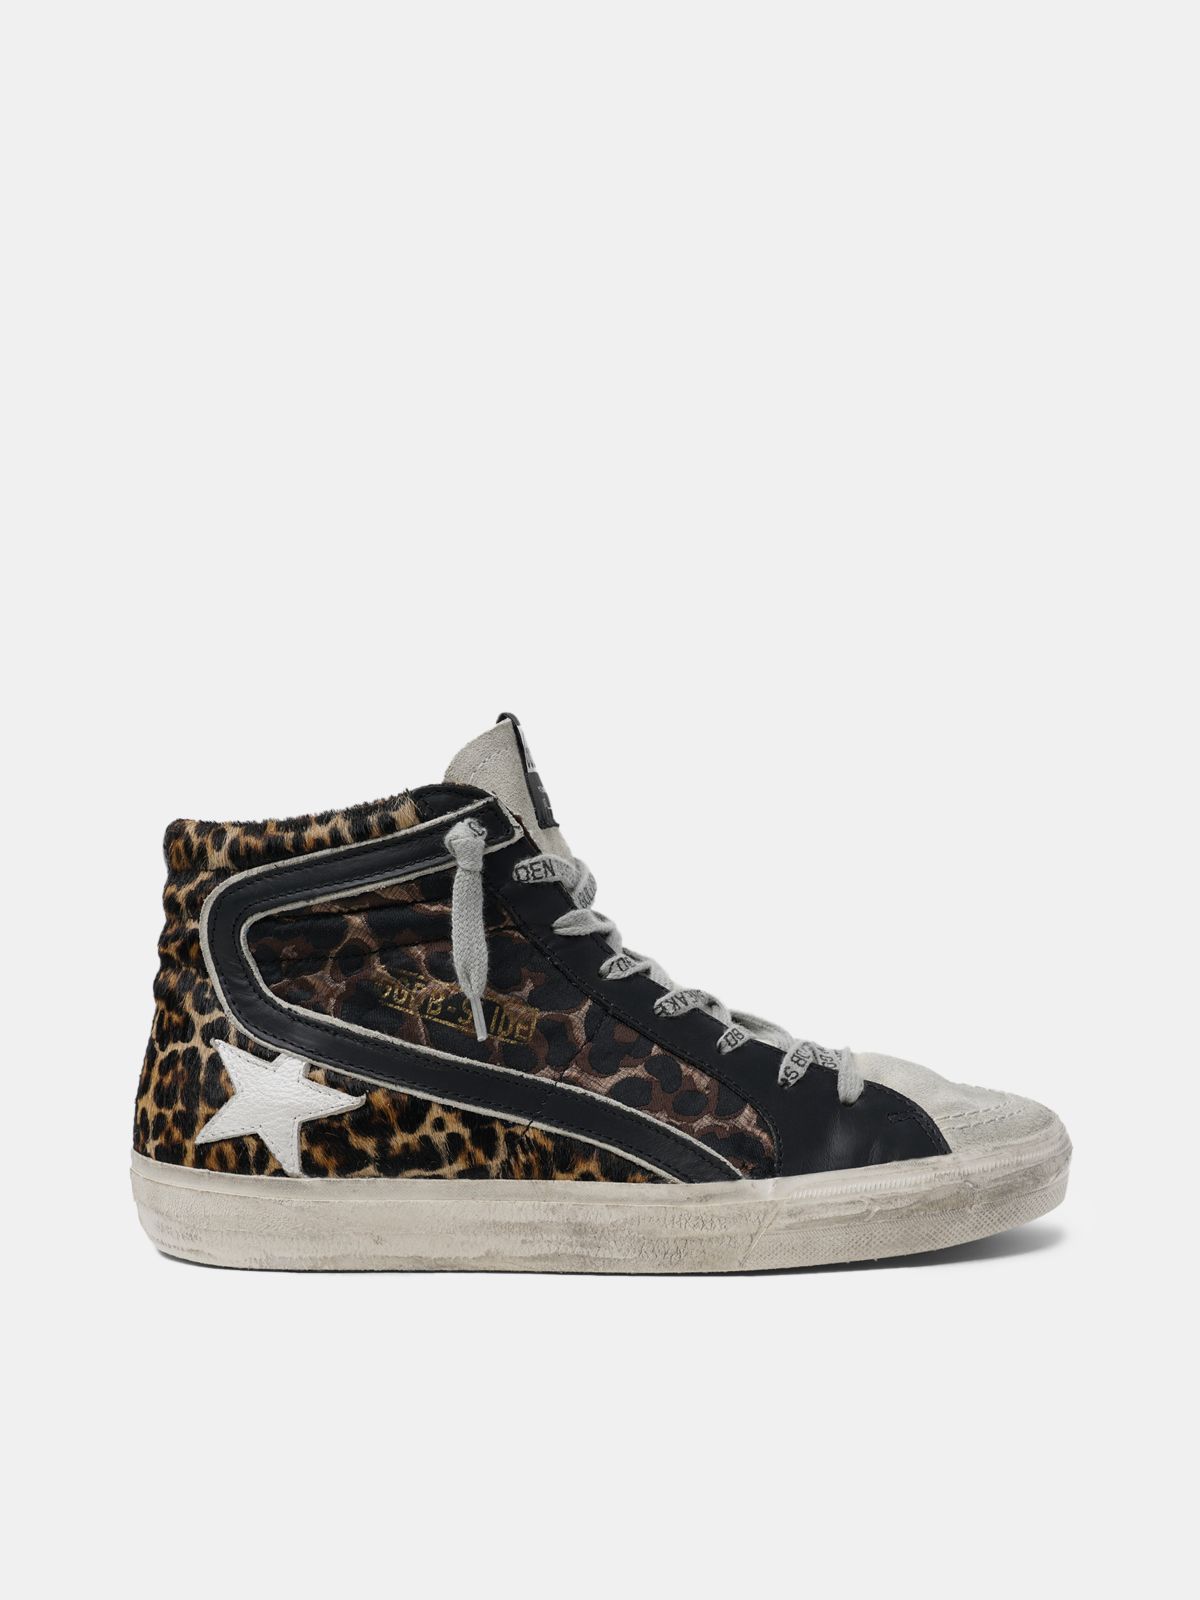 leopard slide sneakers